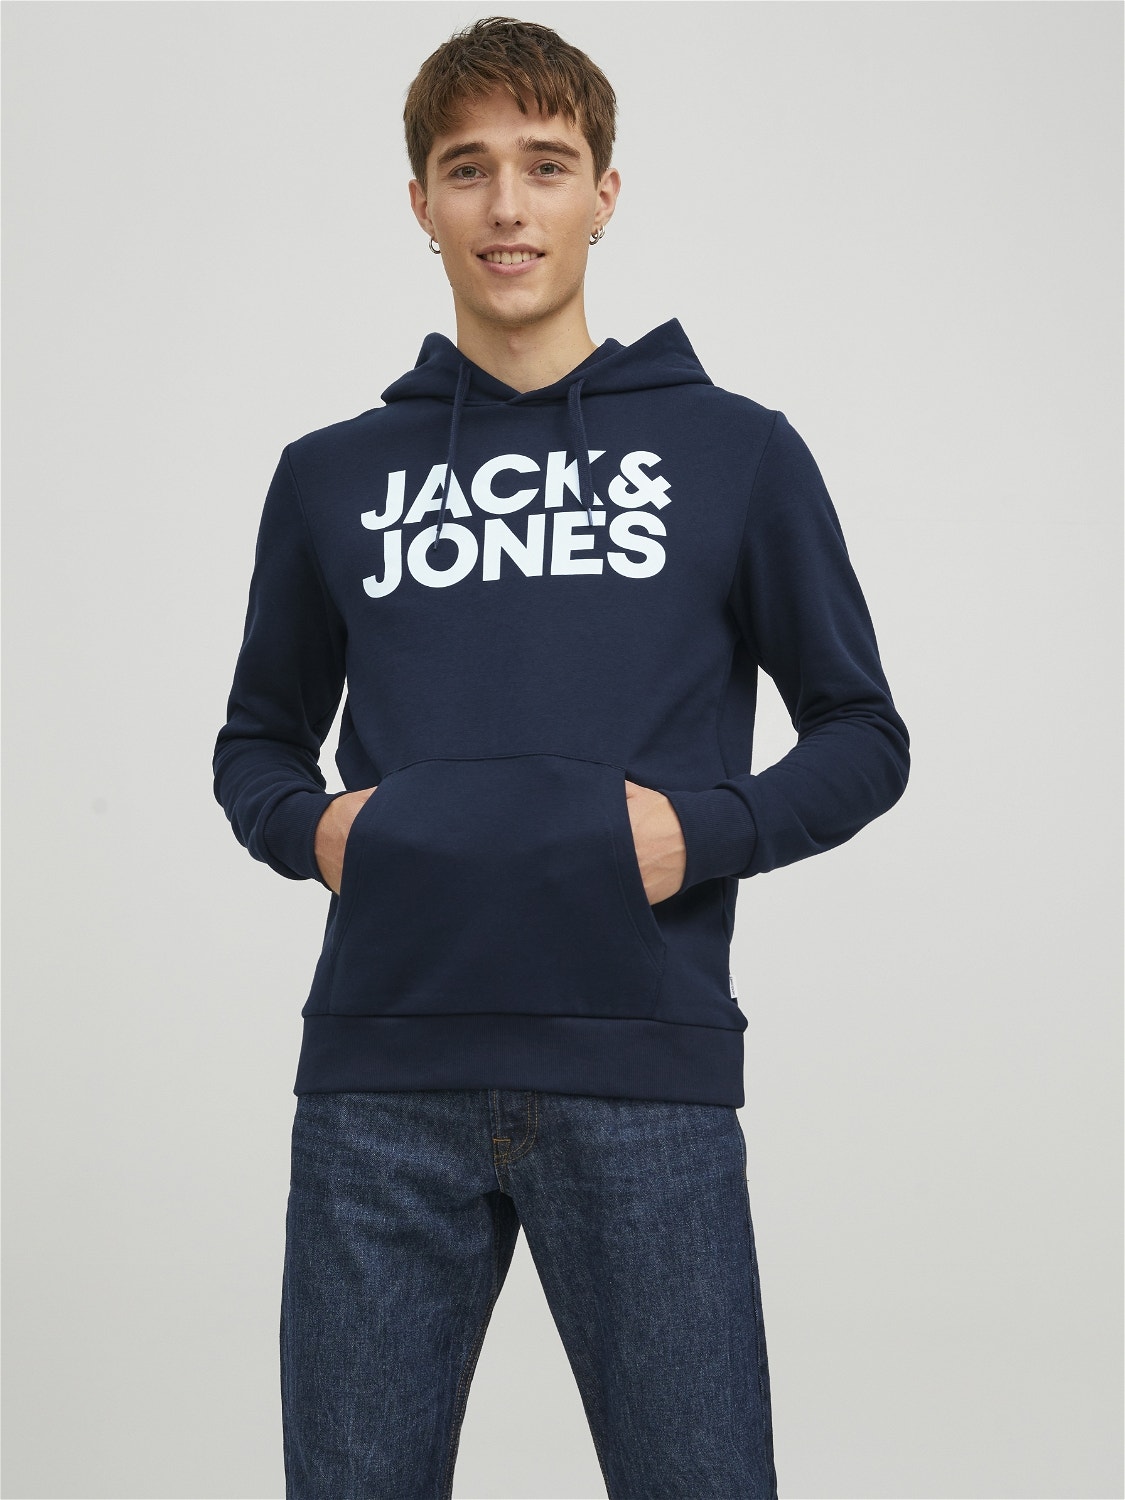 Jack & Jones Logo Hettegenser -Navy Blazer - 12152840